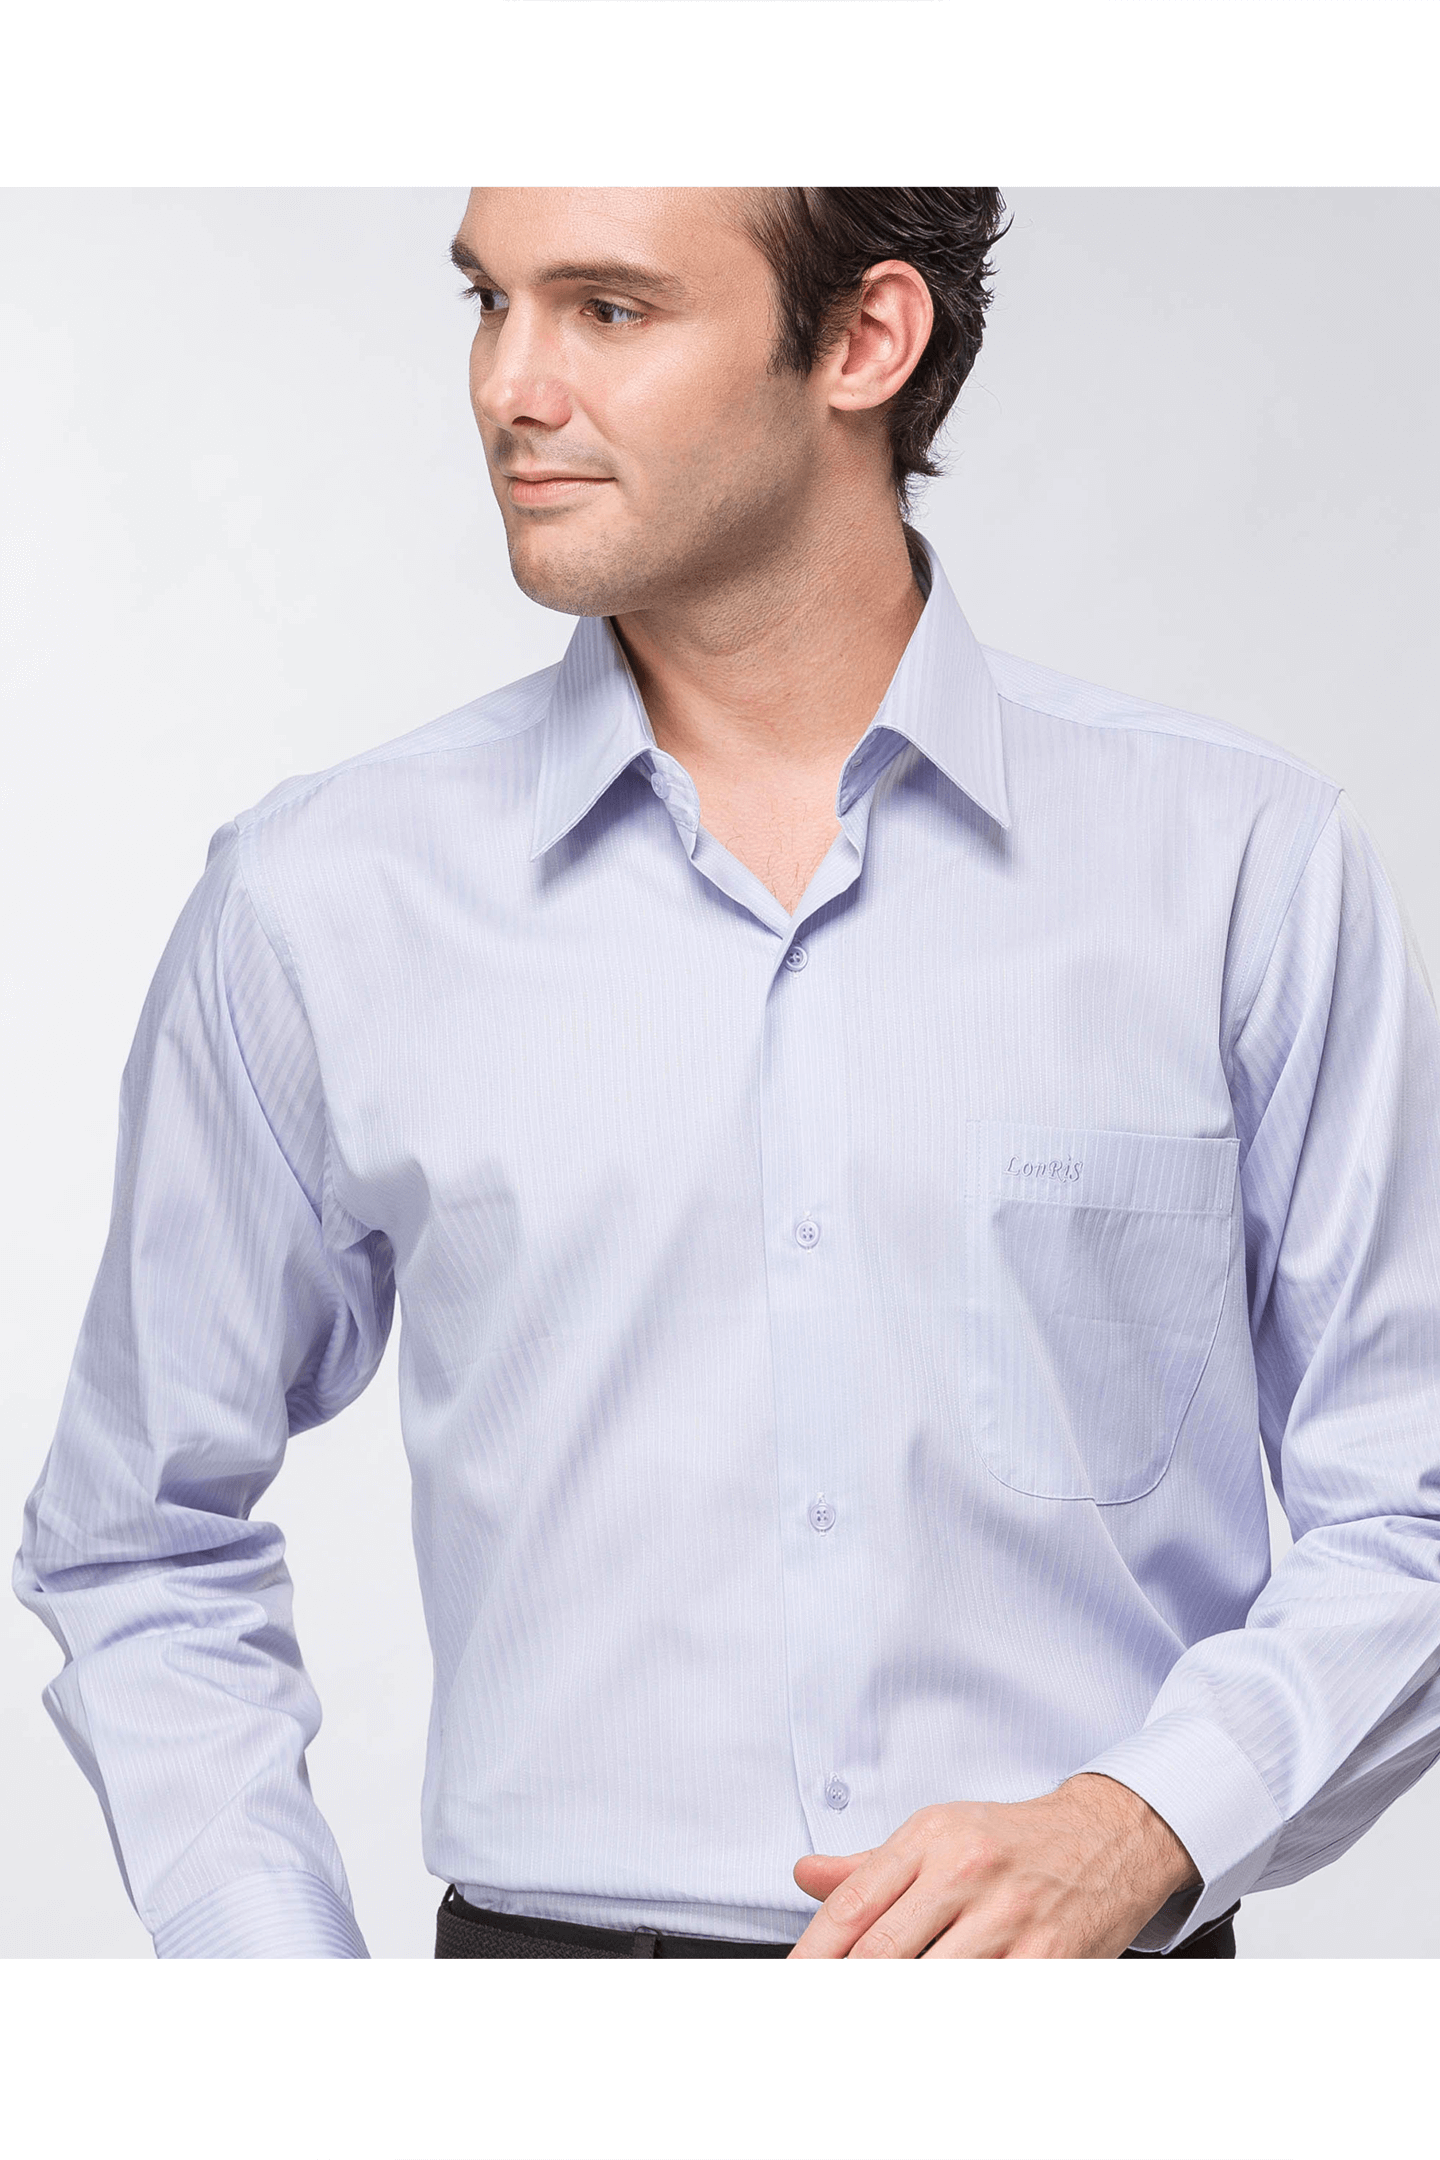 淡紫灰條棉質長袖襯衫 / 舒適透氣